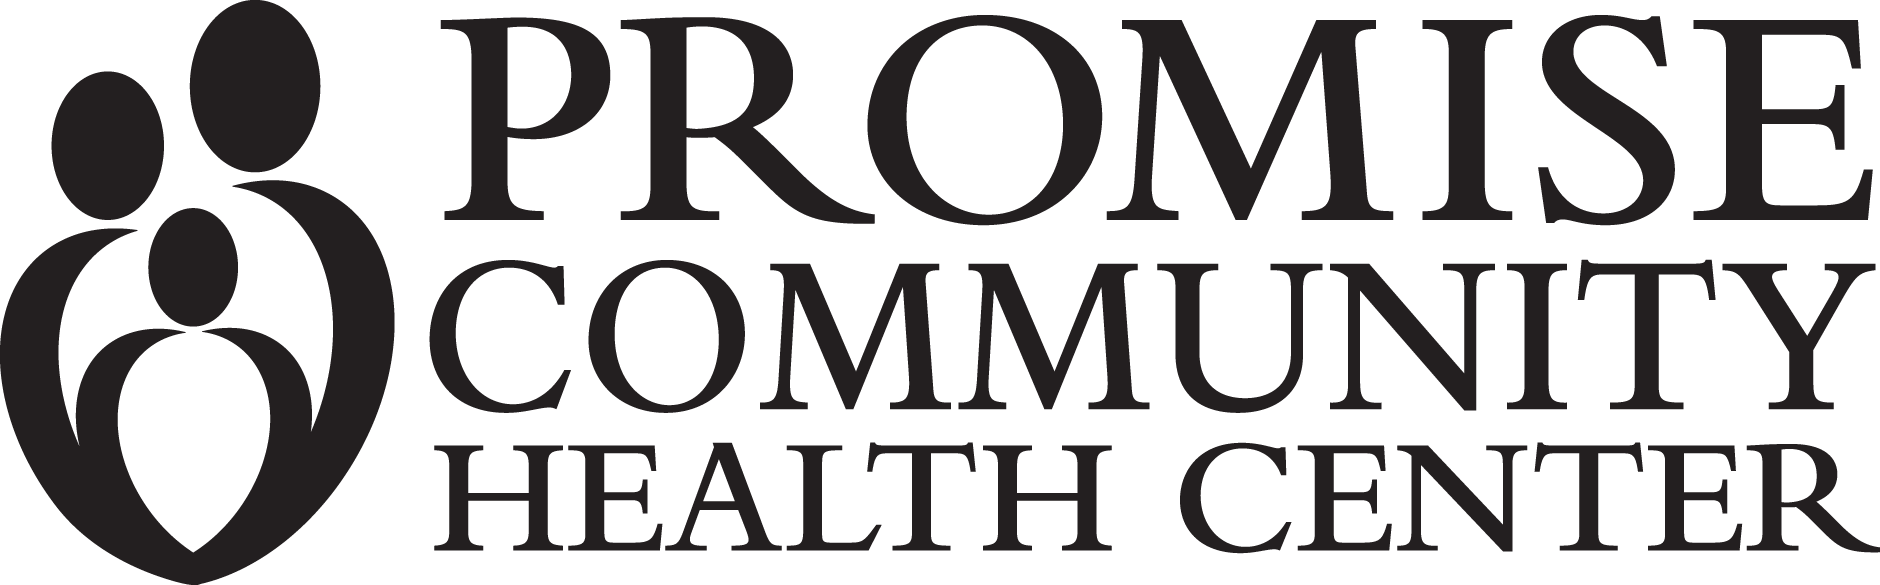 Promise Community Health Center logo